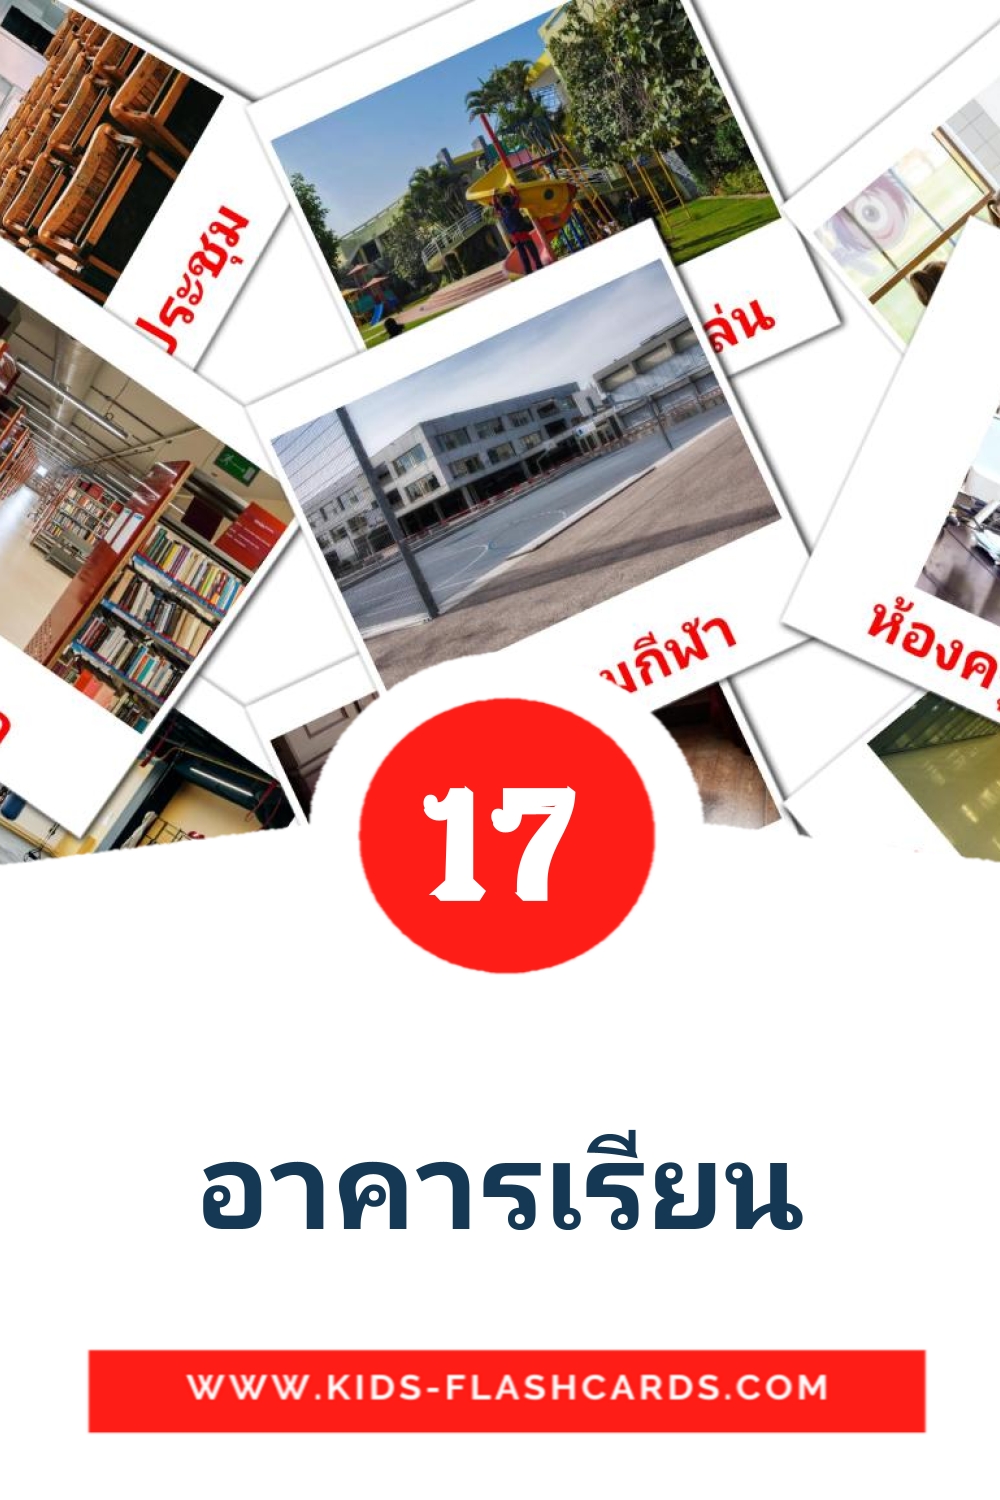 17 carte illustrate di อาคารเรียน per la scuola materna in tailandese